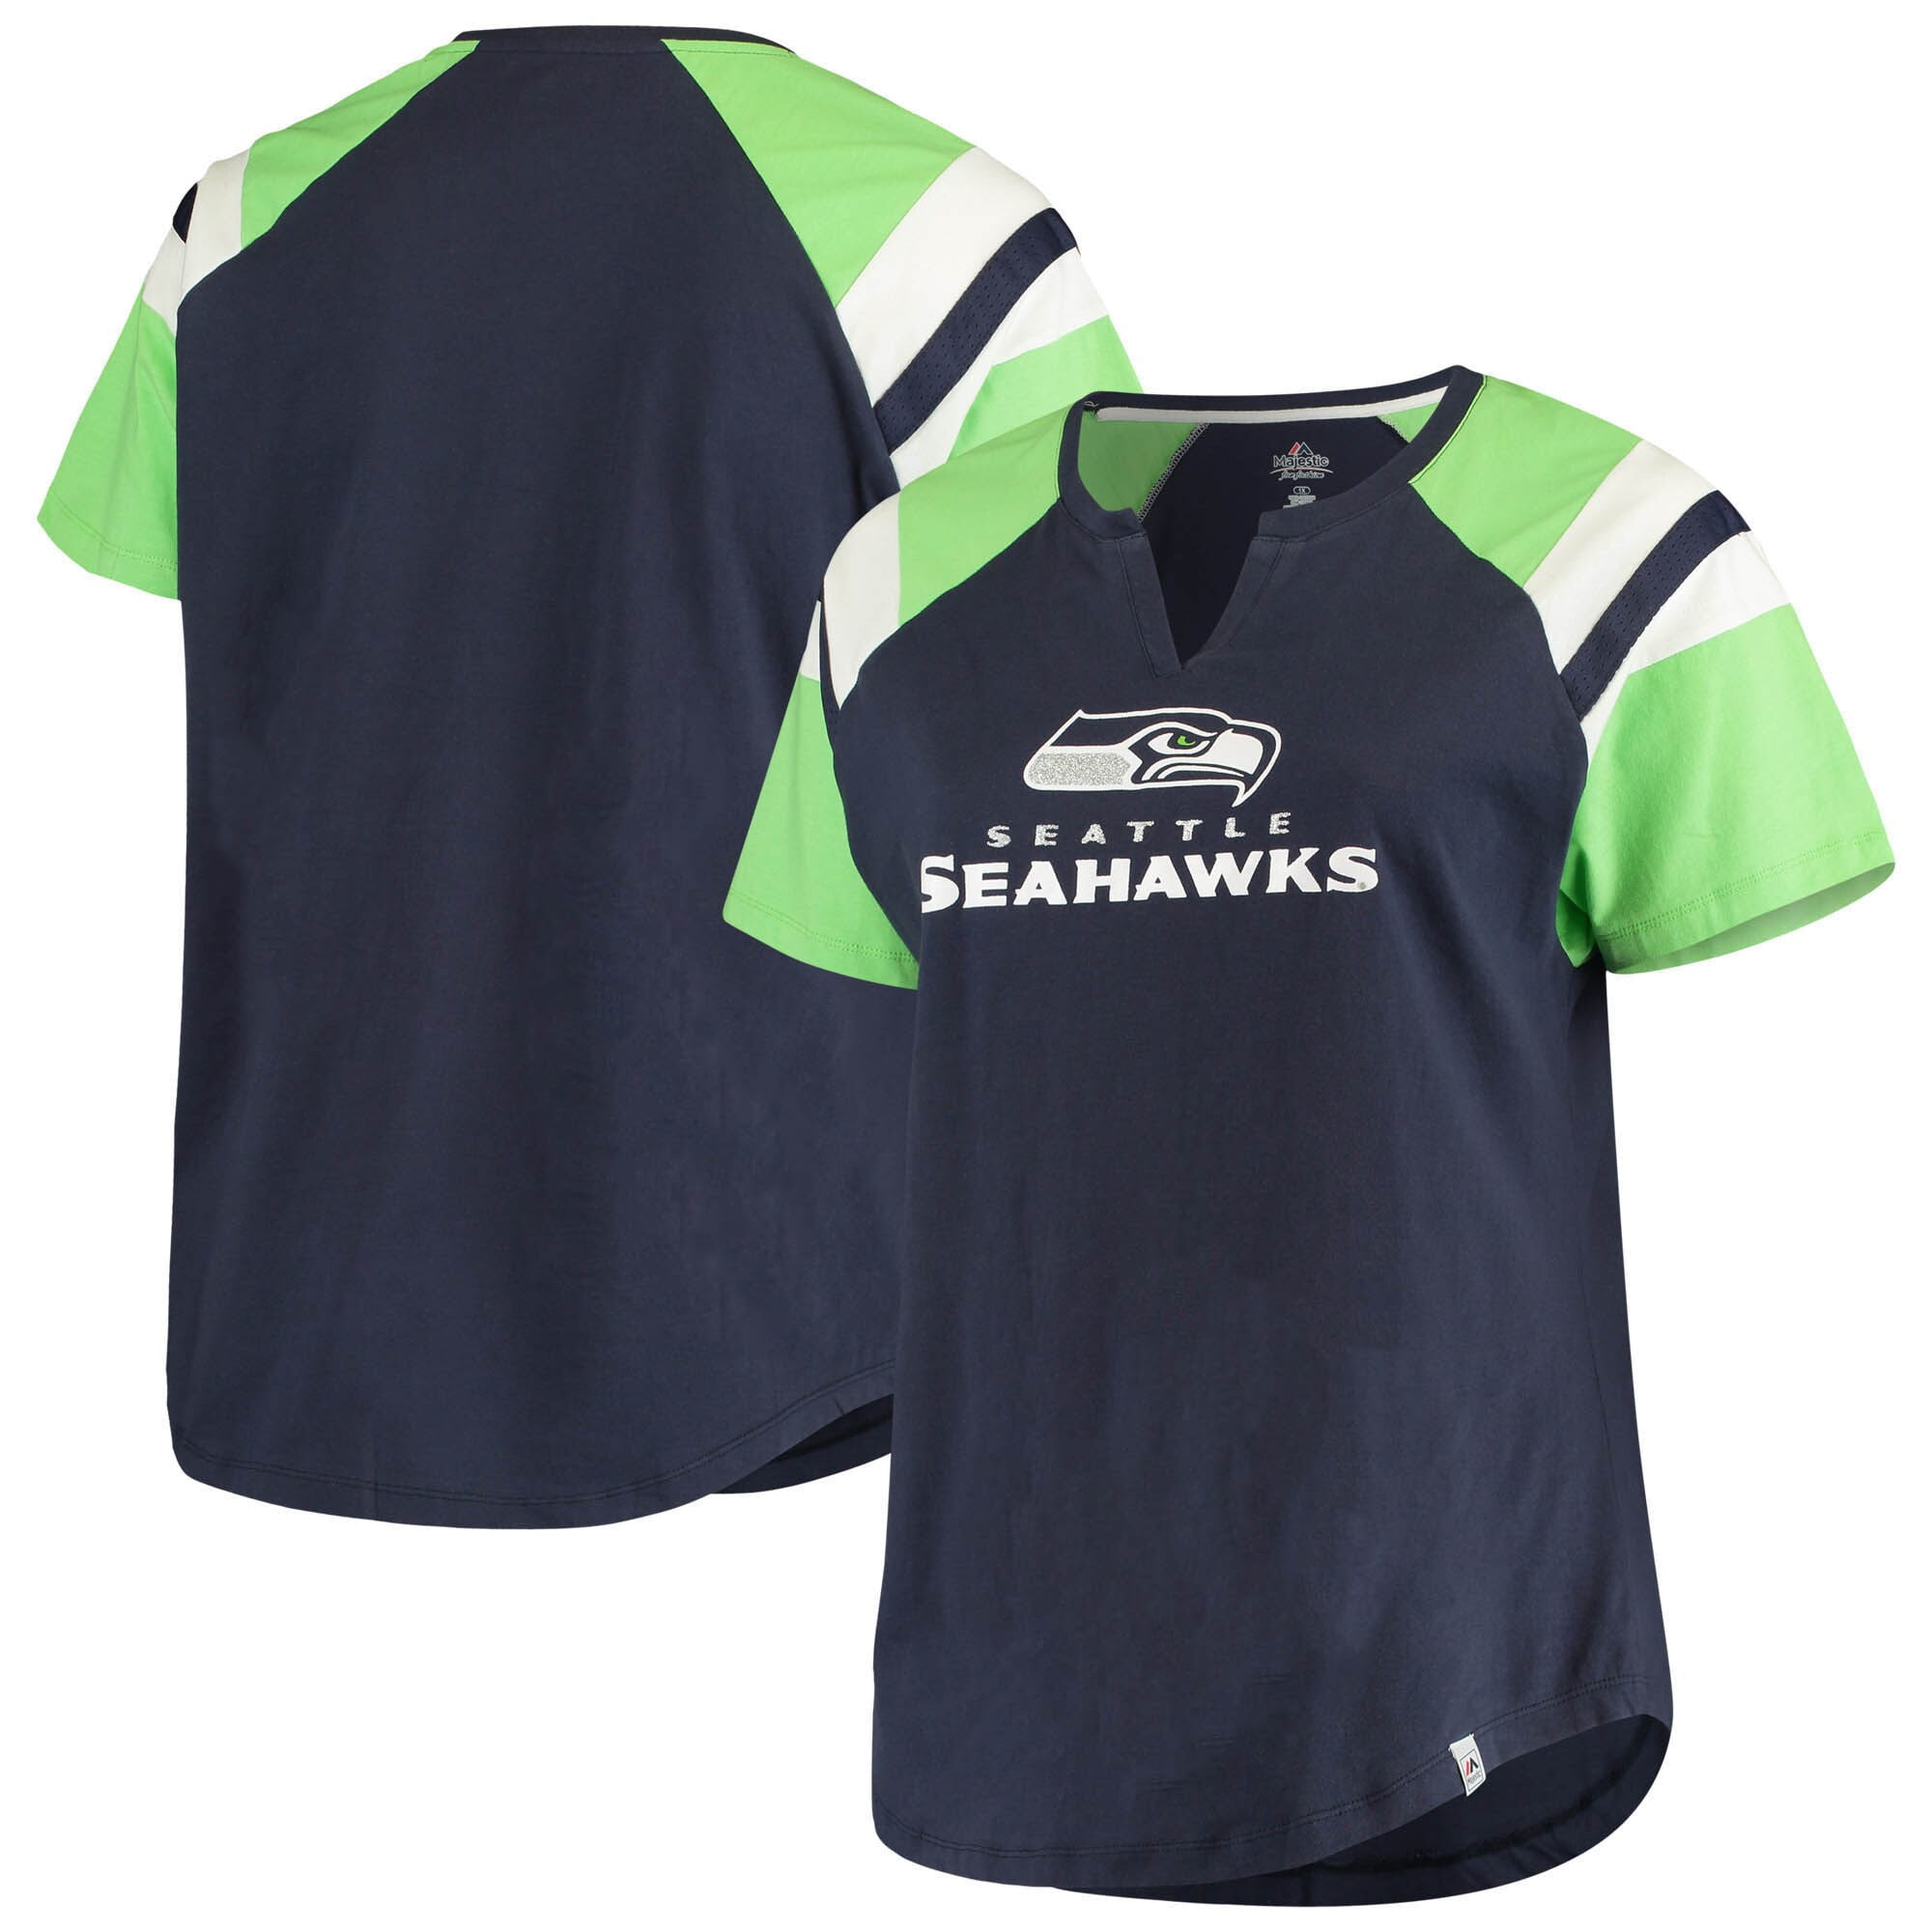 plus size seahawks gear